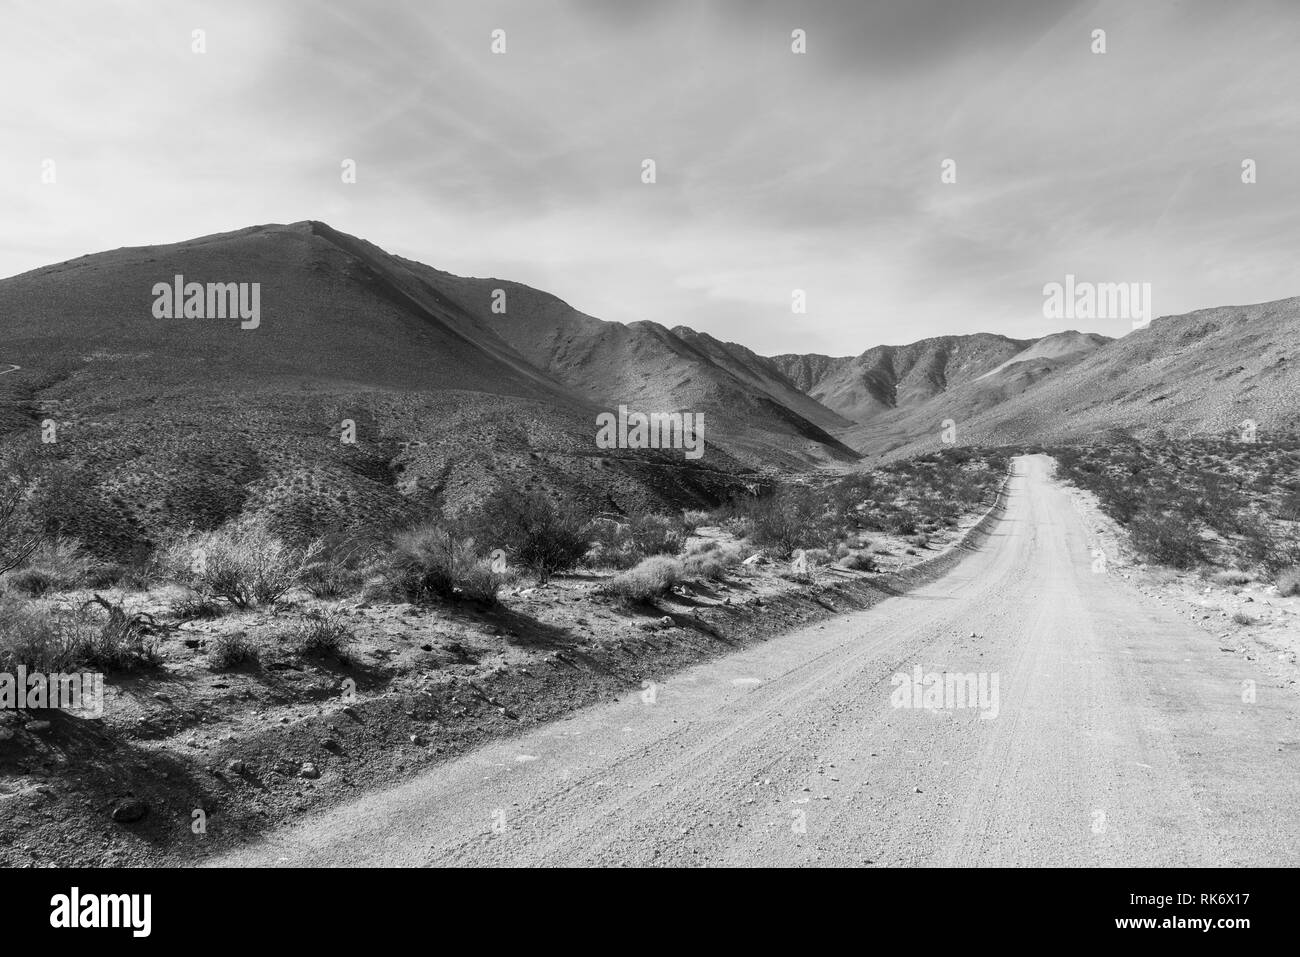 Noir et blanc, desert route de terre menant au désert aride montagne sous ciel nuageux. Banque de terre de chaque côté de la route et desert brosse. Banque D'Images